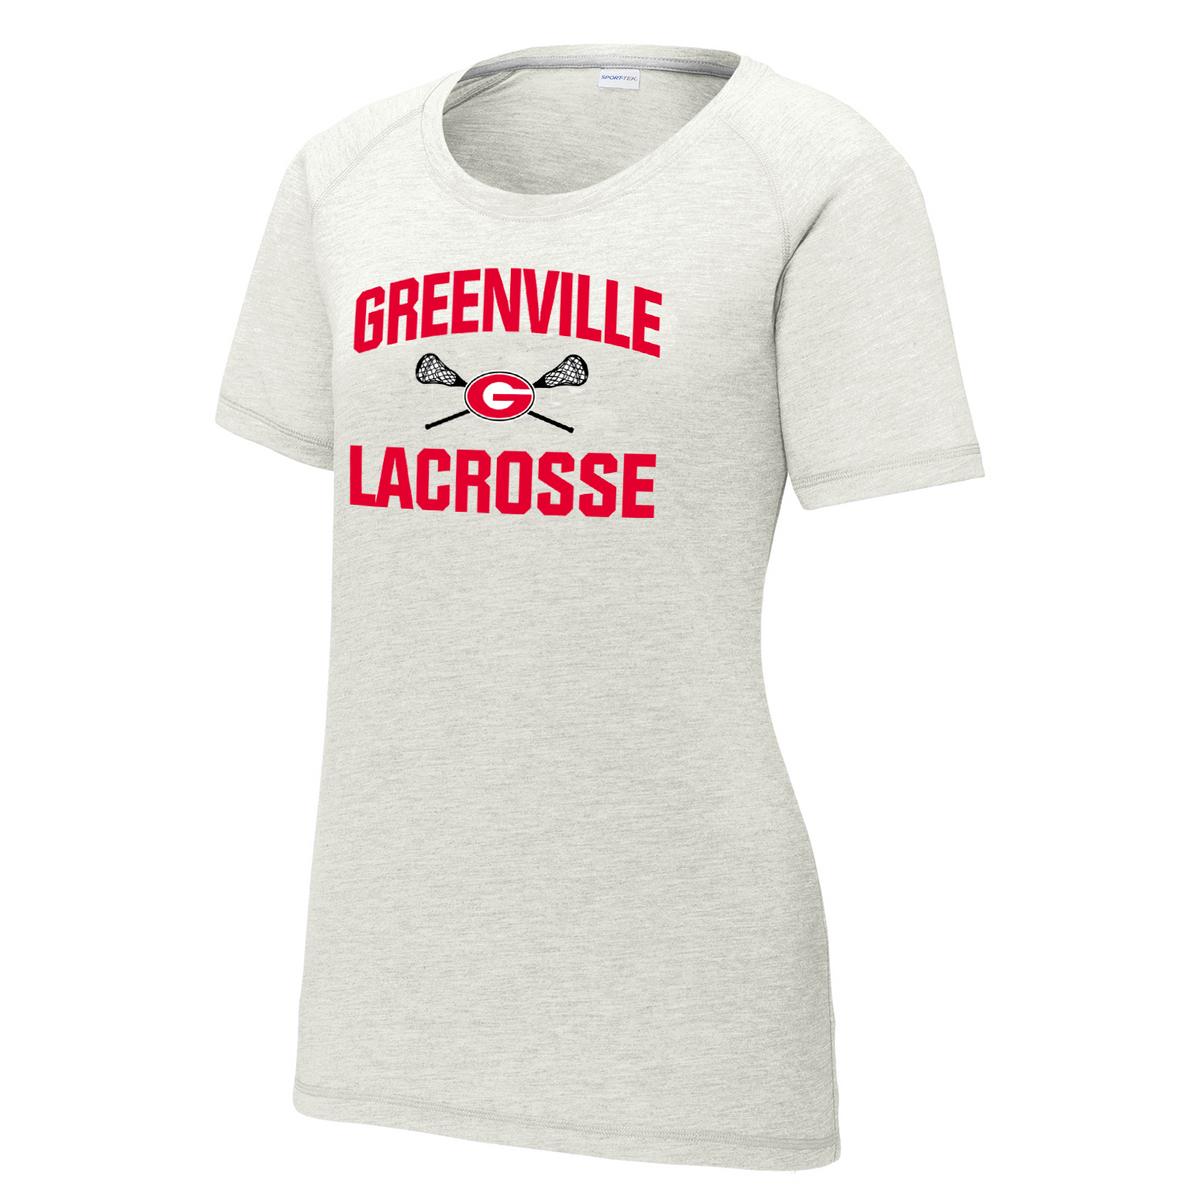 Greenville Lacrosse Women's Raglan CottonTouch